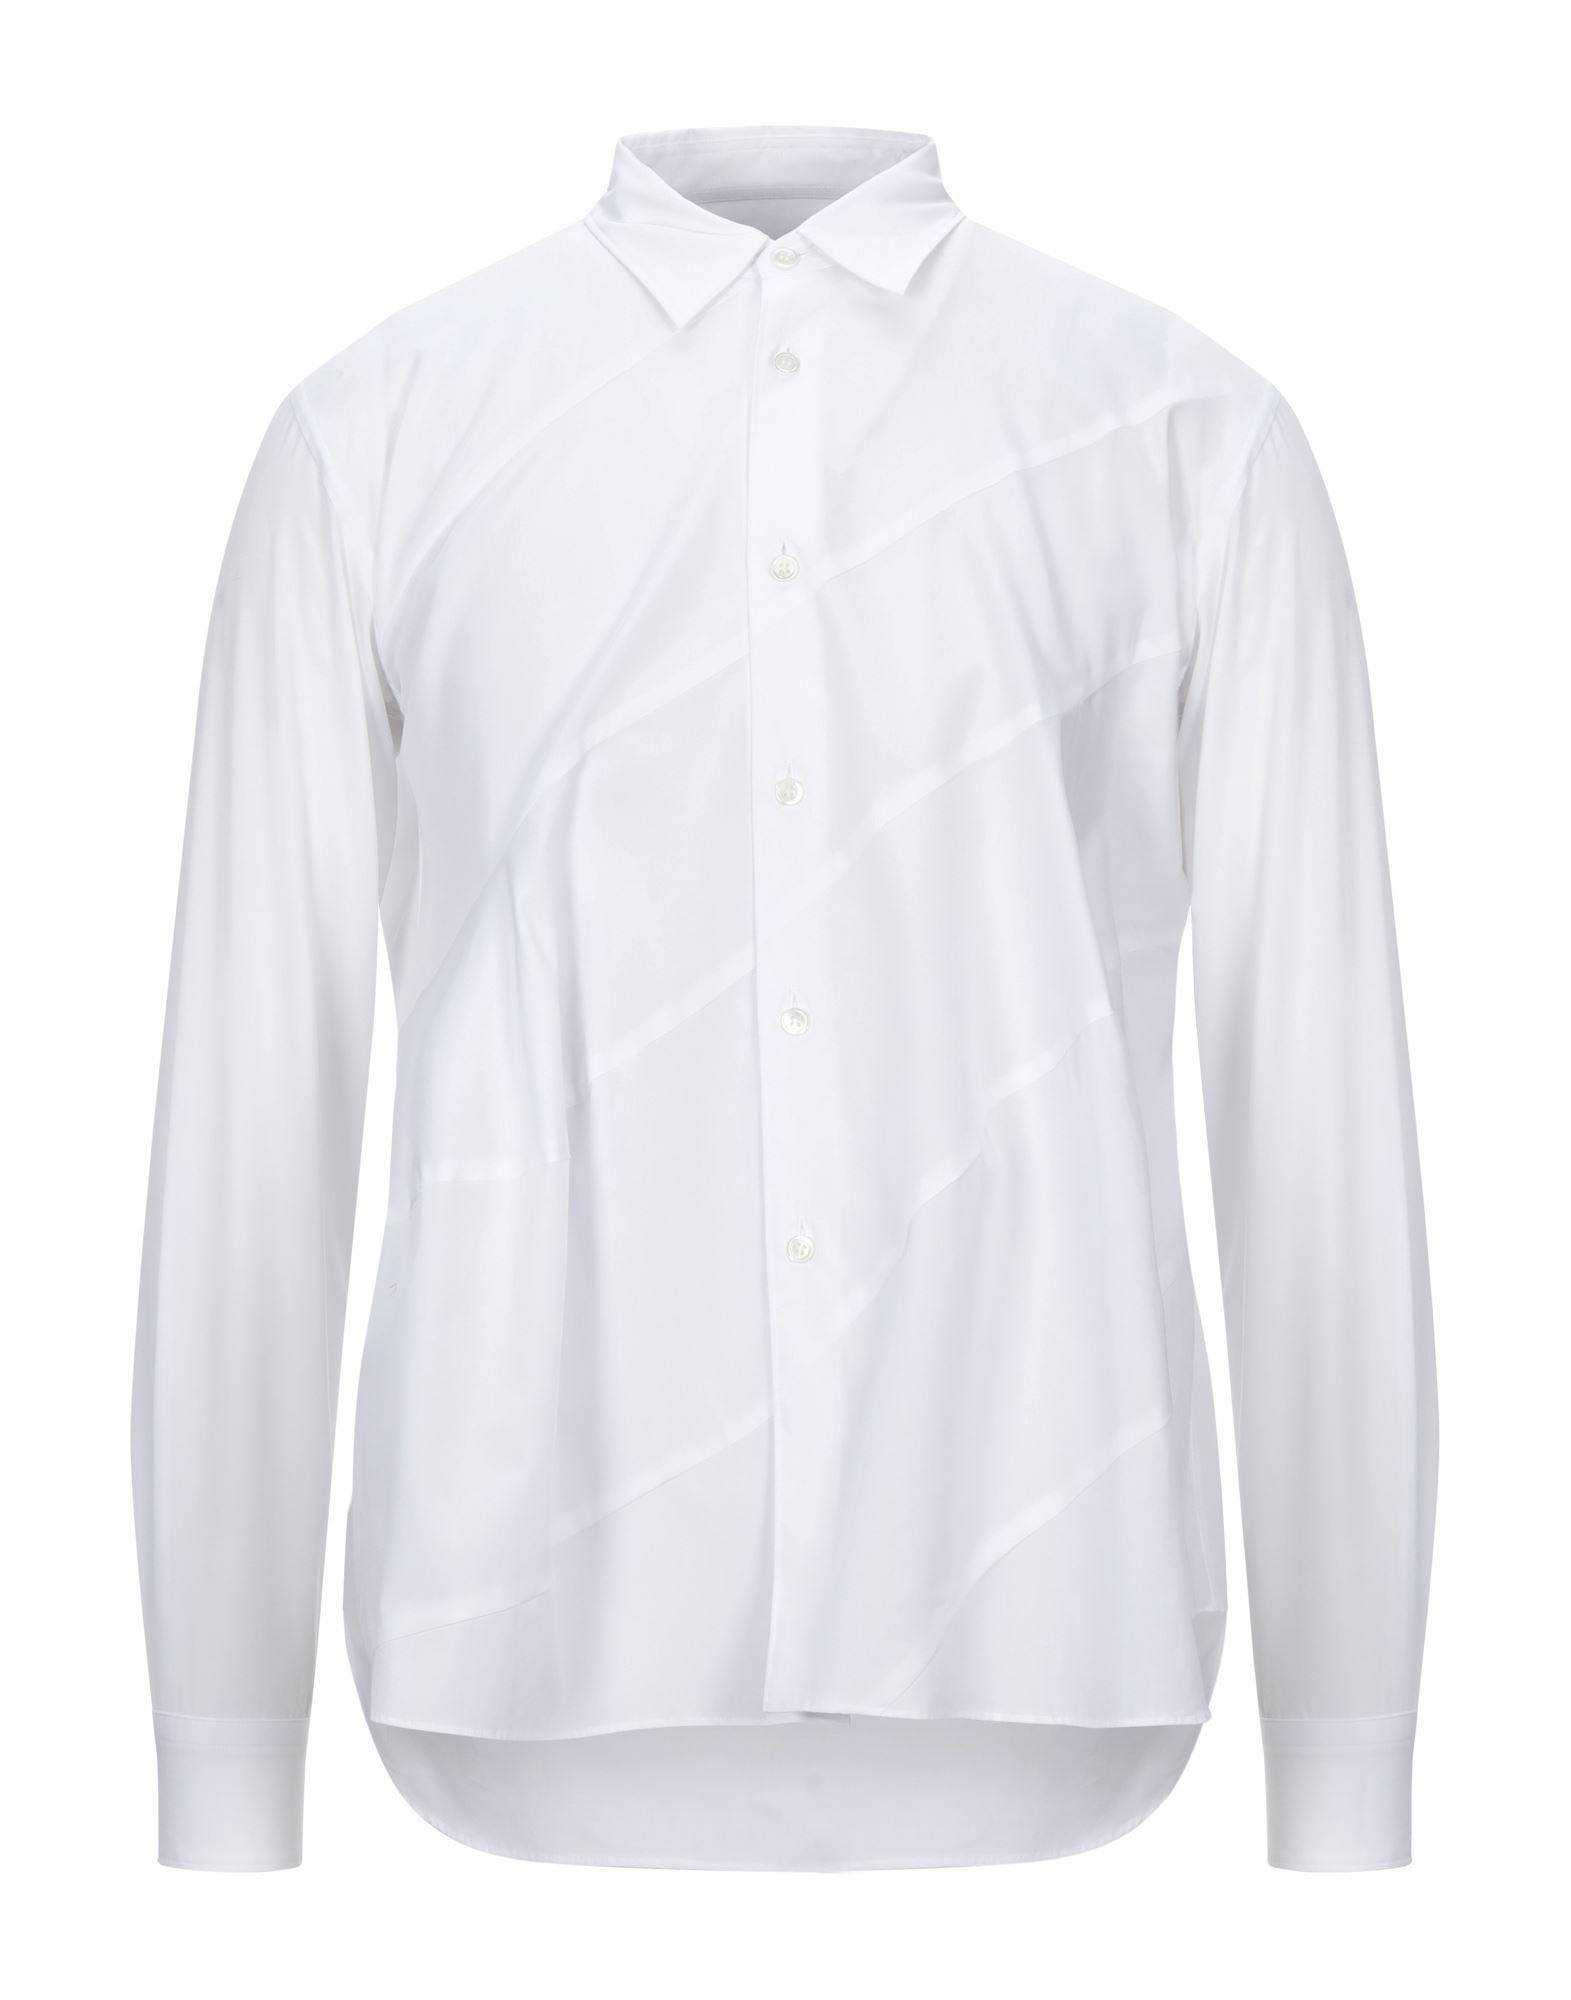 コムデギャルソン メンズシャツ・ワイシャツ | 通販・人気ランキング - 価格.com